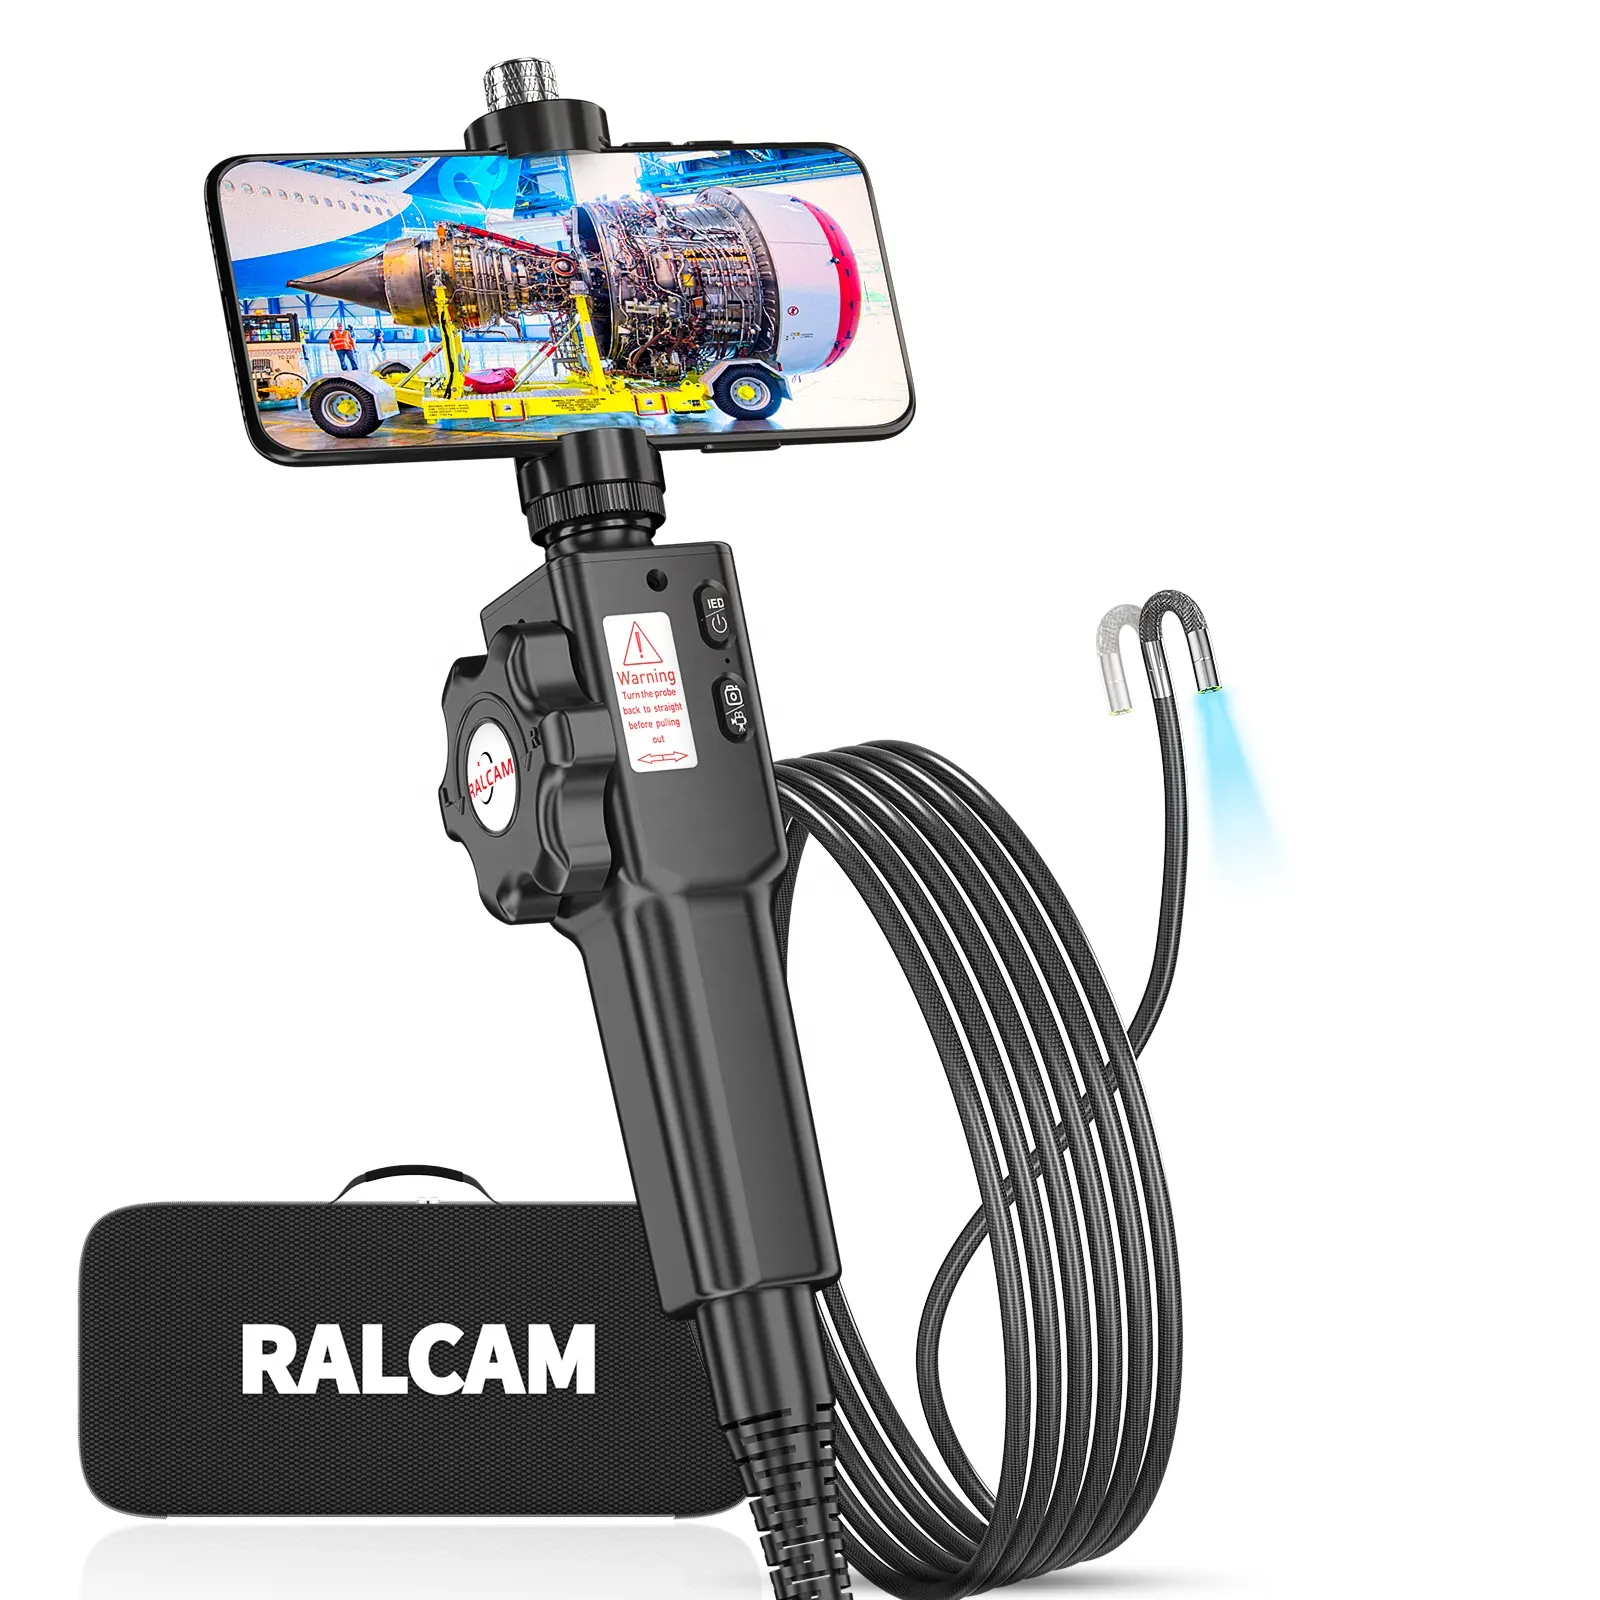 Ralcam Vente en gros mondiale Caméra d'inspection personnalisée IP67 6.2mm Support Android et IOS Borescope articulé